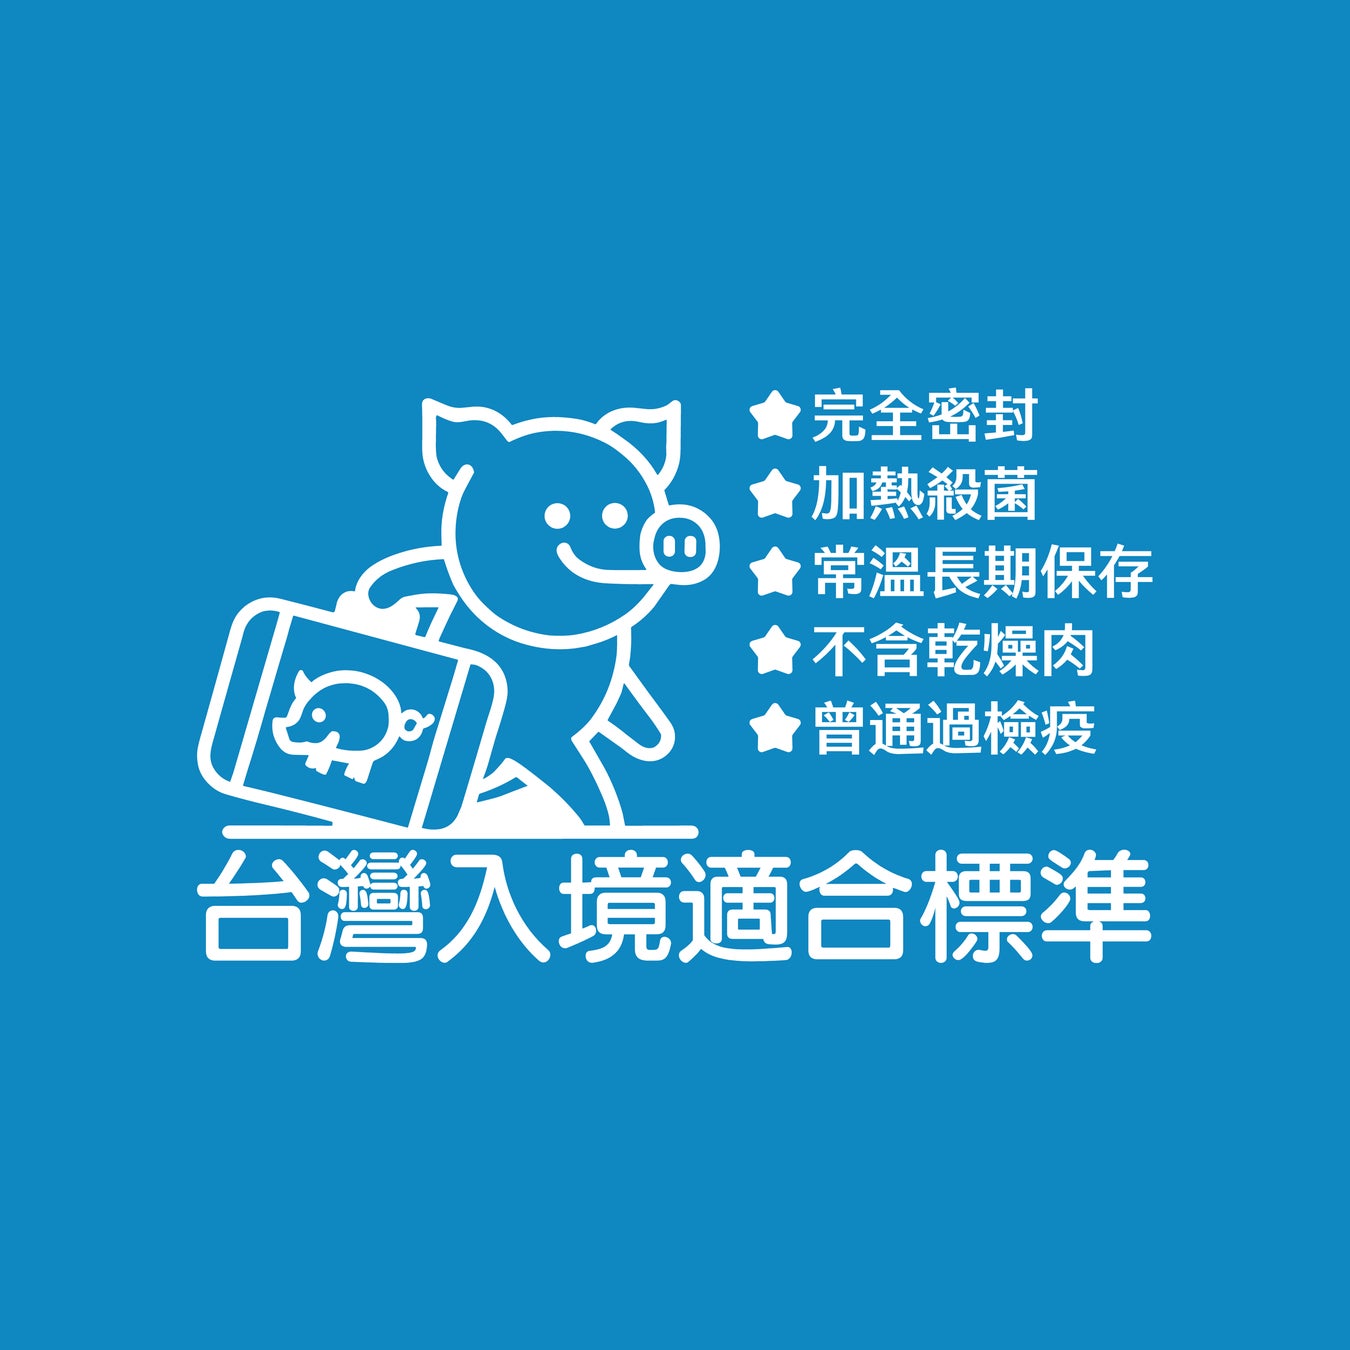 【独自調査】台湾人訪日客へのおみやげ調査約9割が豚肉を避けることが判明。約4割の人はラードを含むちんすこうも罰則対象と回答。